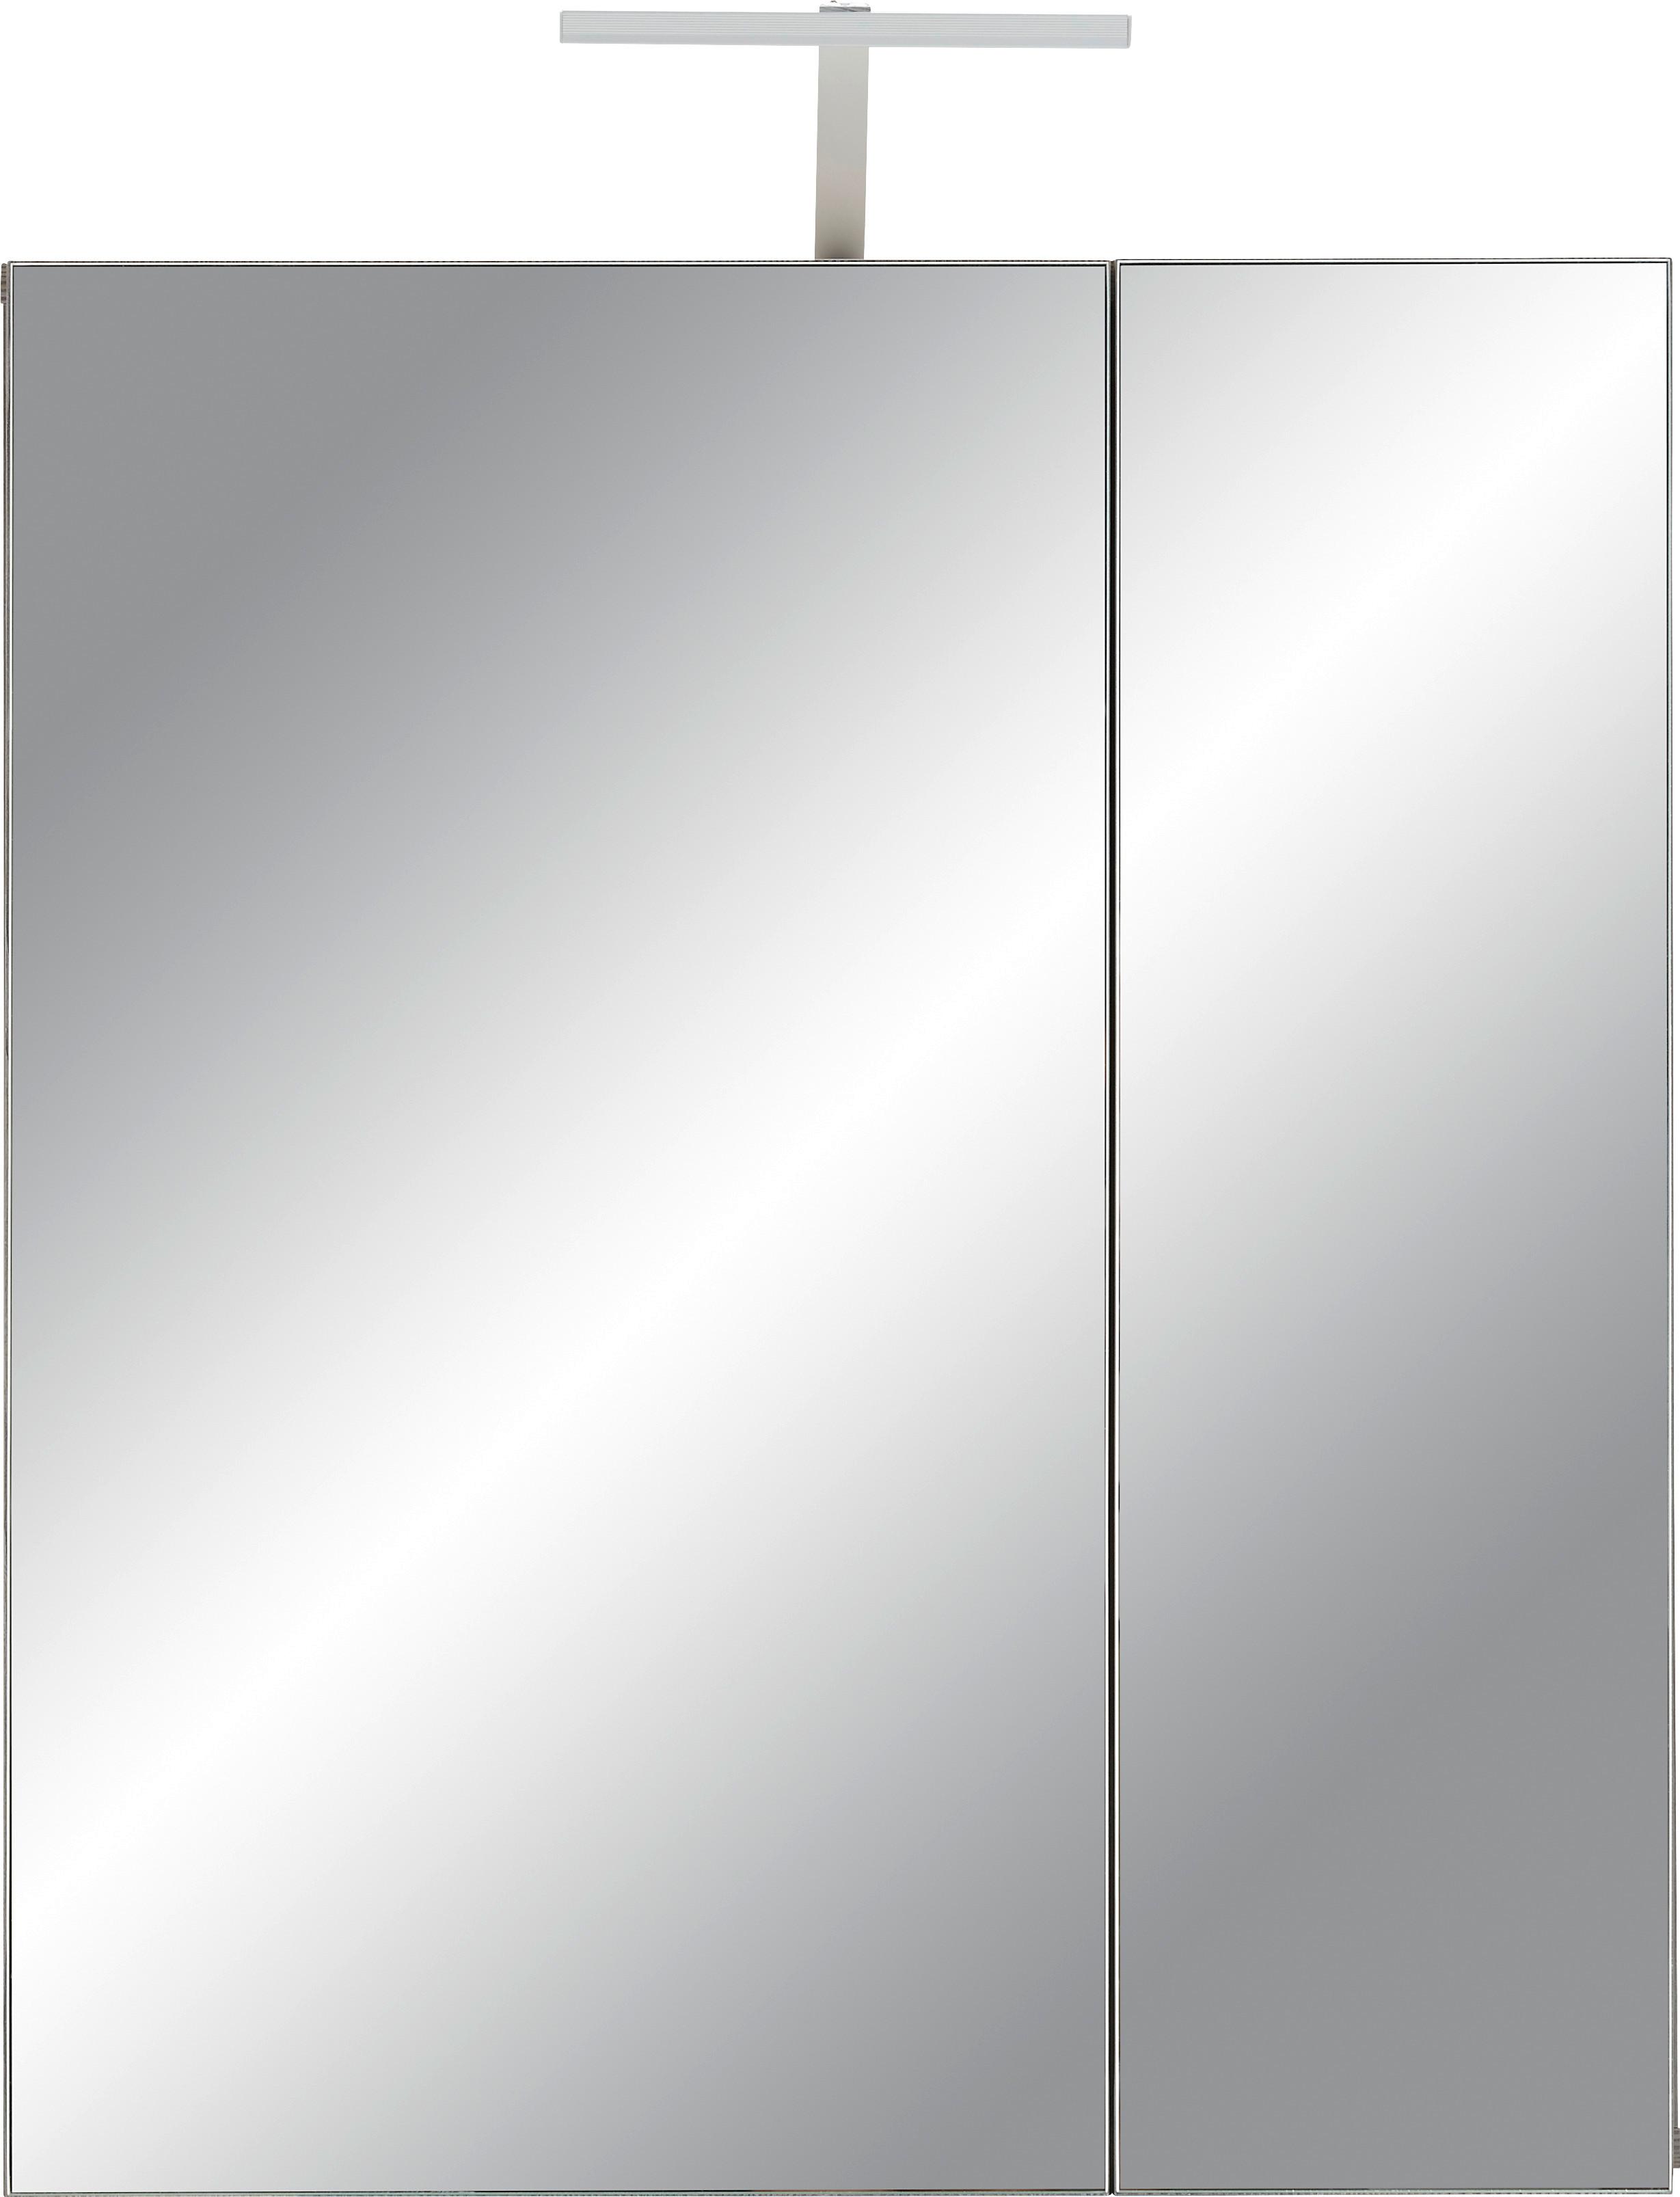 Skříňka Se Zrcadlem Santorin Vč.osvetl. -Exklusiv- - tmavě hnědá, Konvenční, kompozitní dřevo/sklo (65/75cm) - Modern Living